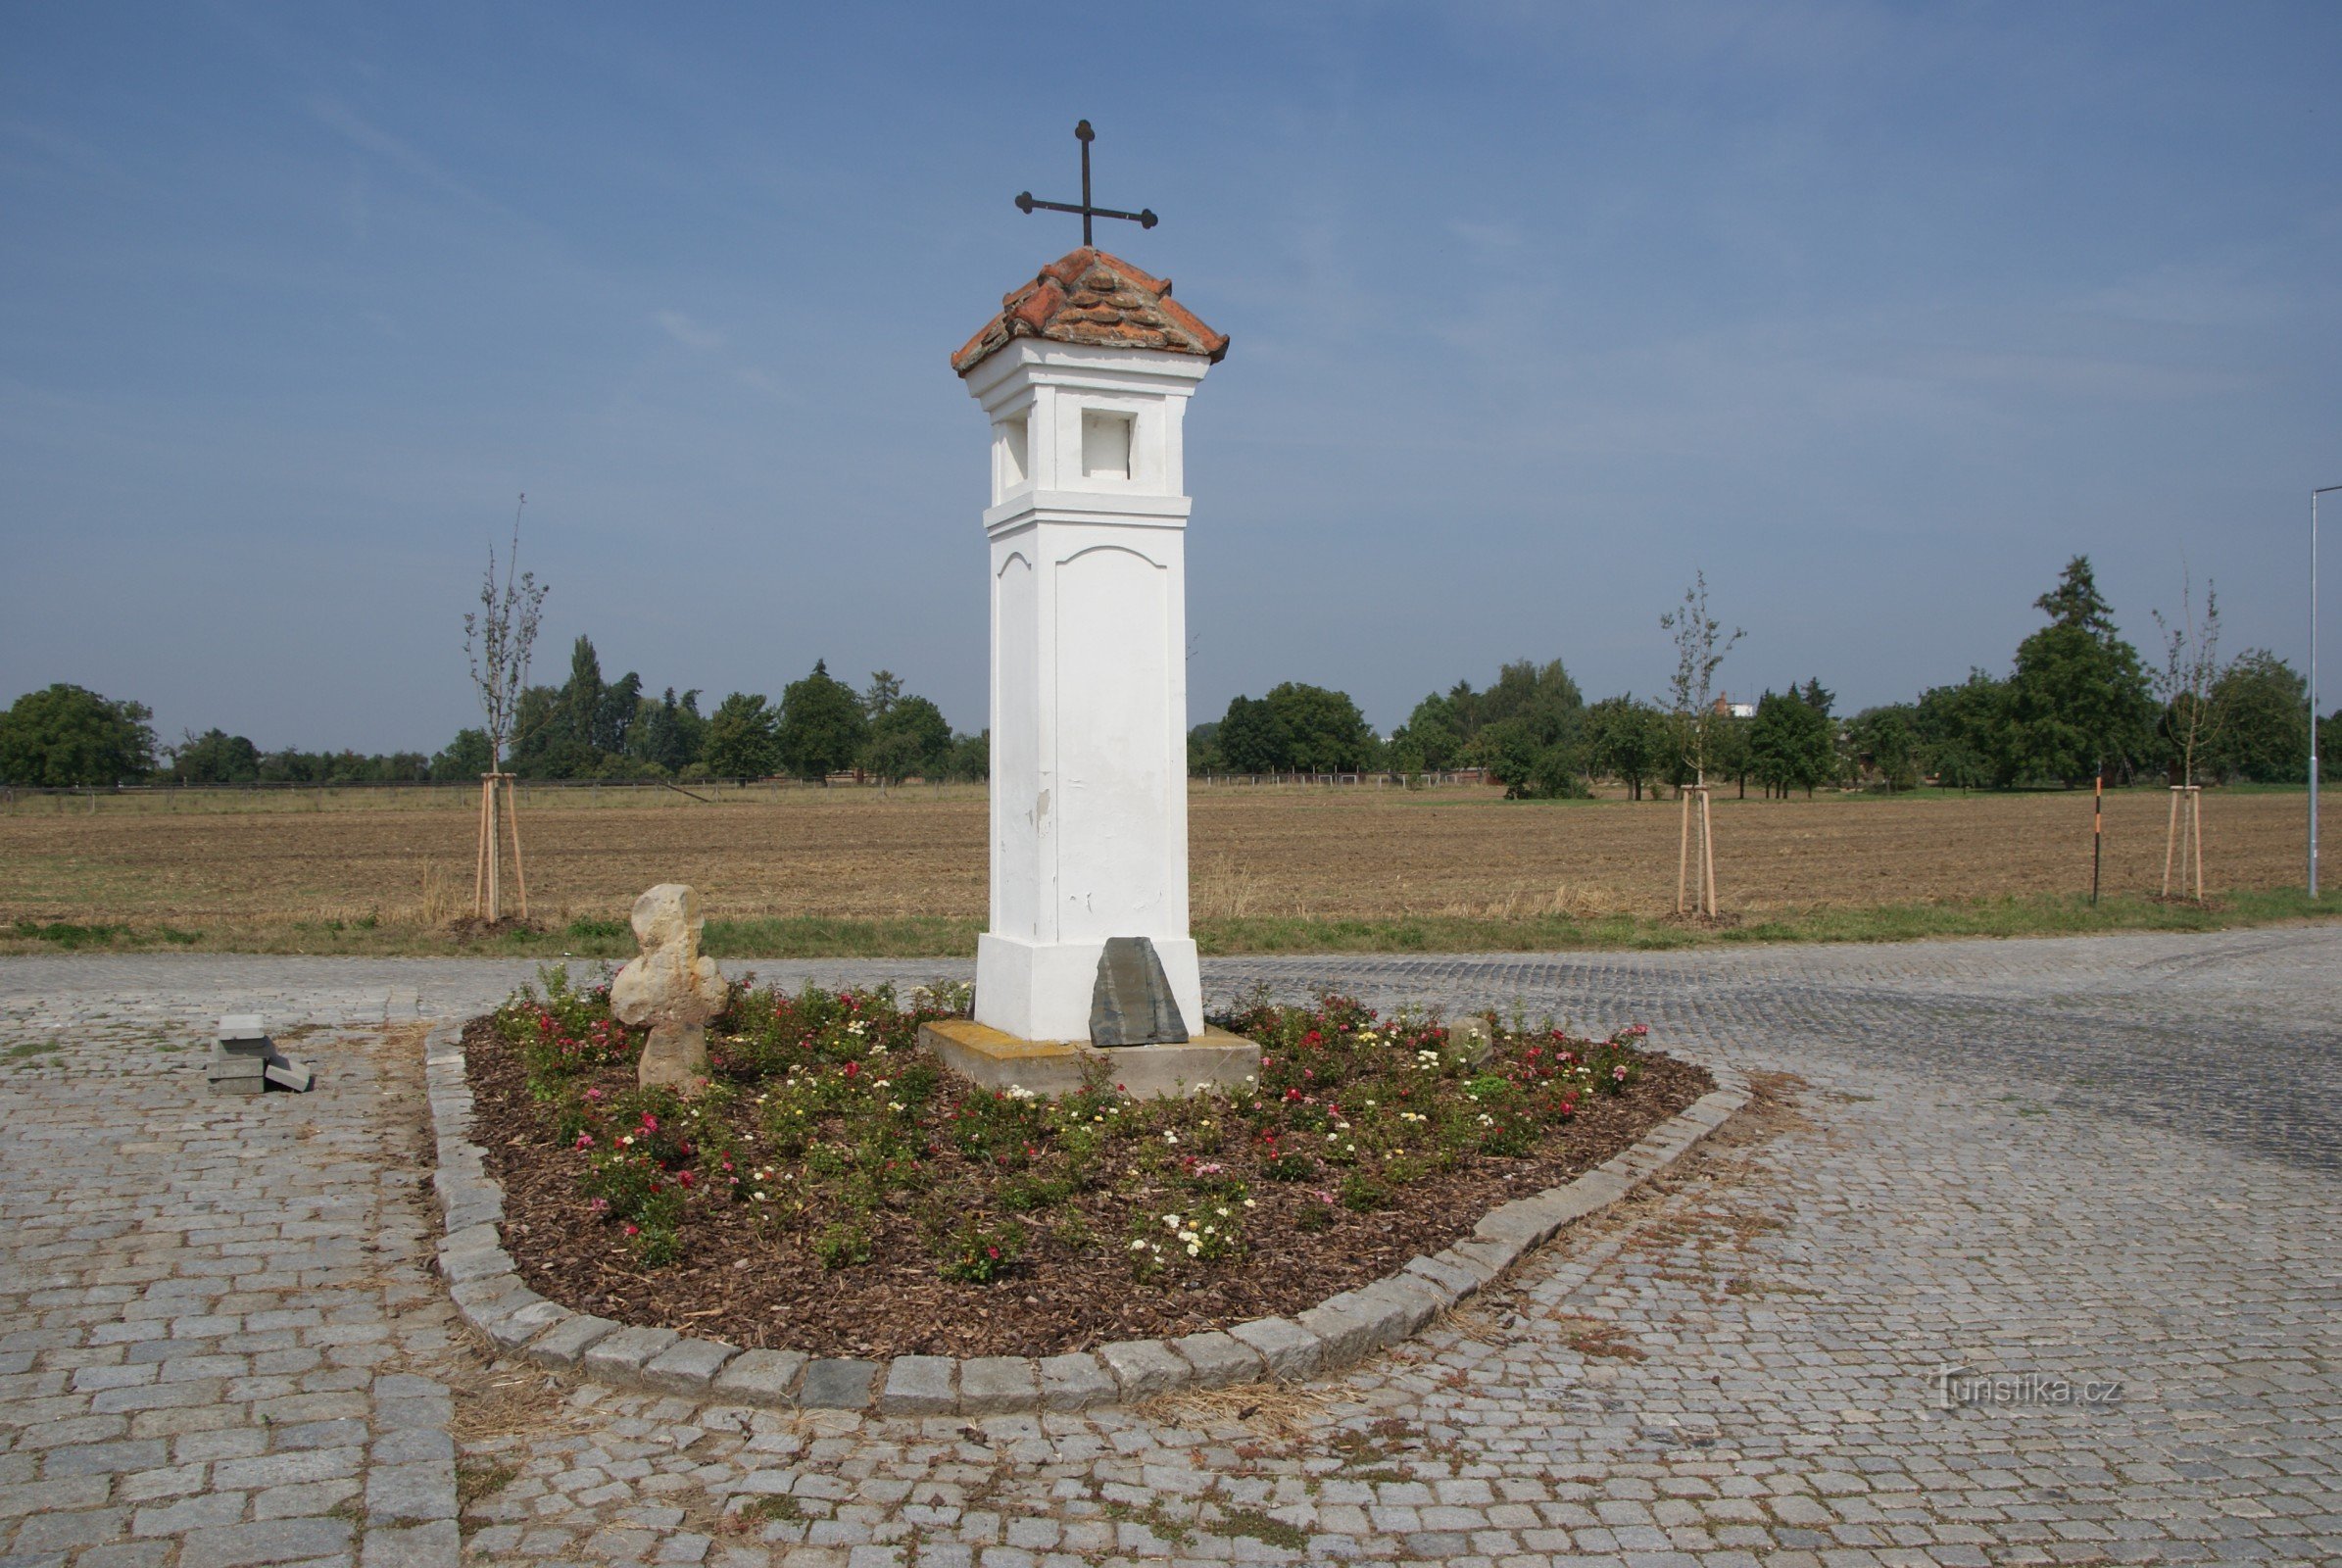 Ordrer (nær Olomouc) - "nyt" fredskors i landbrugsskala